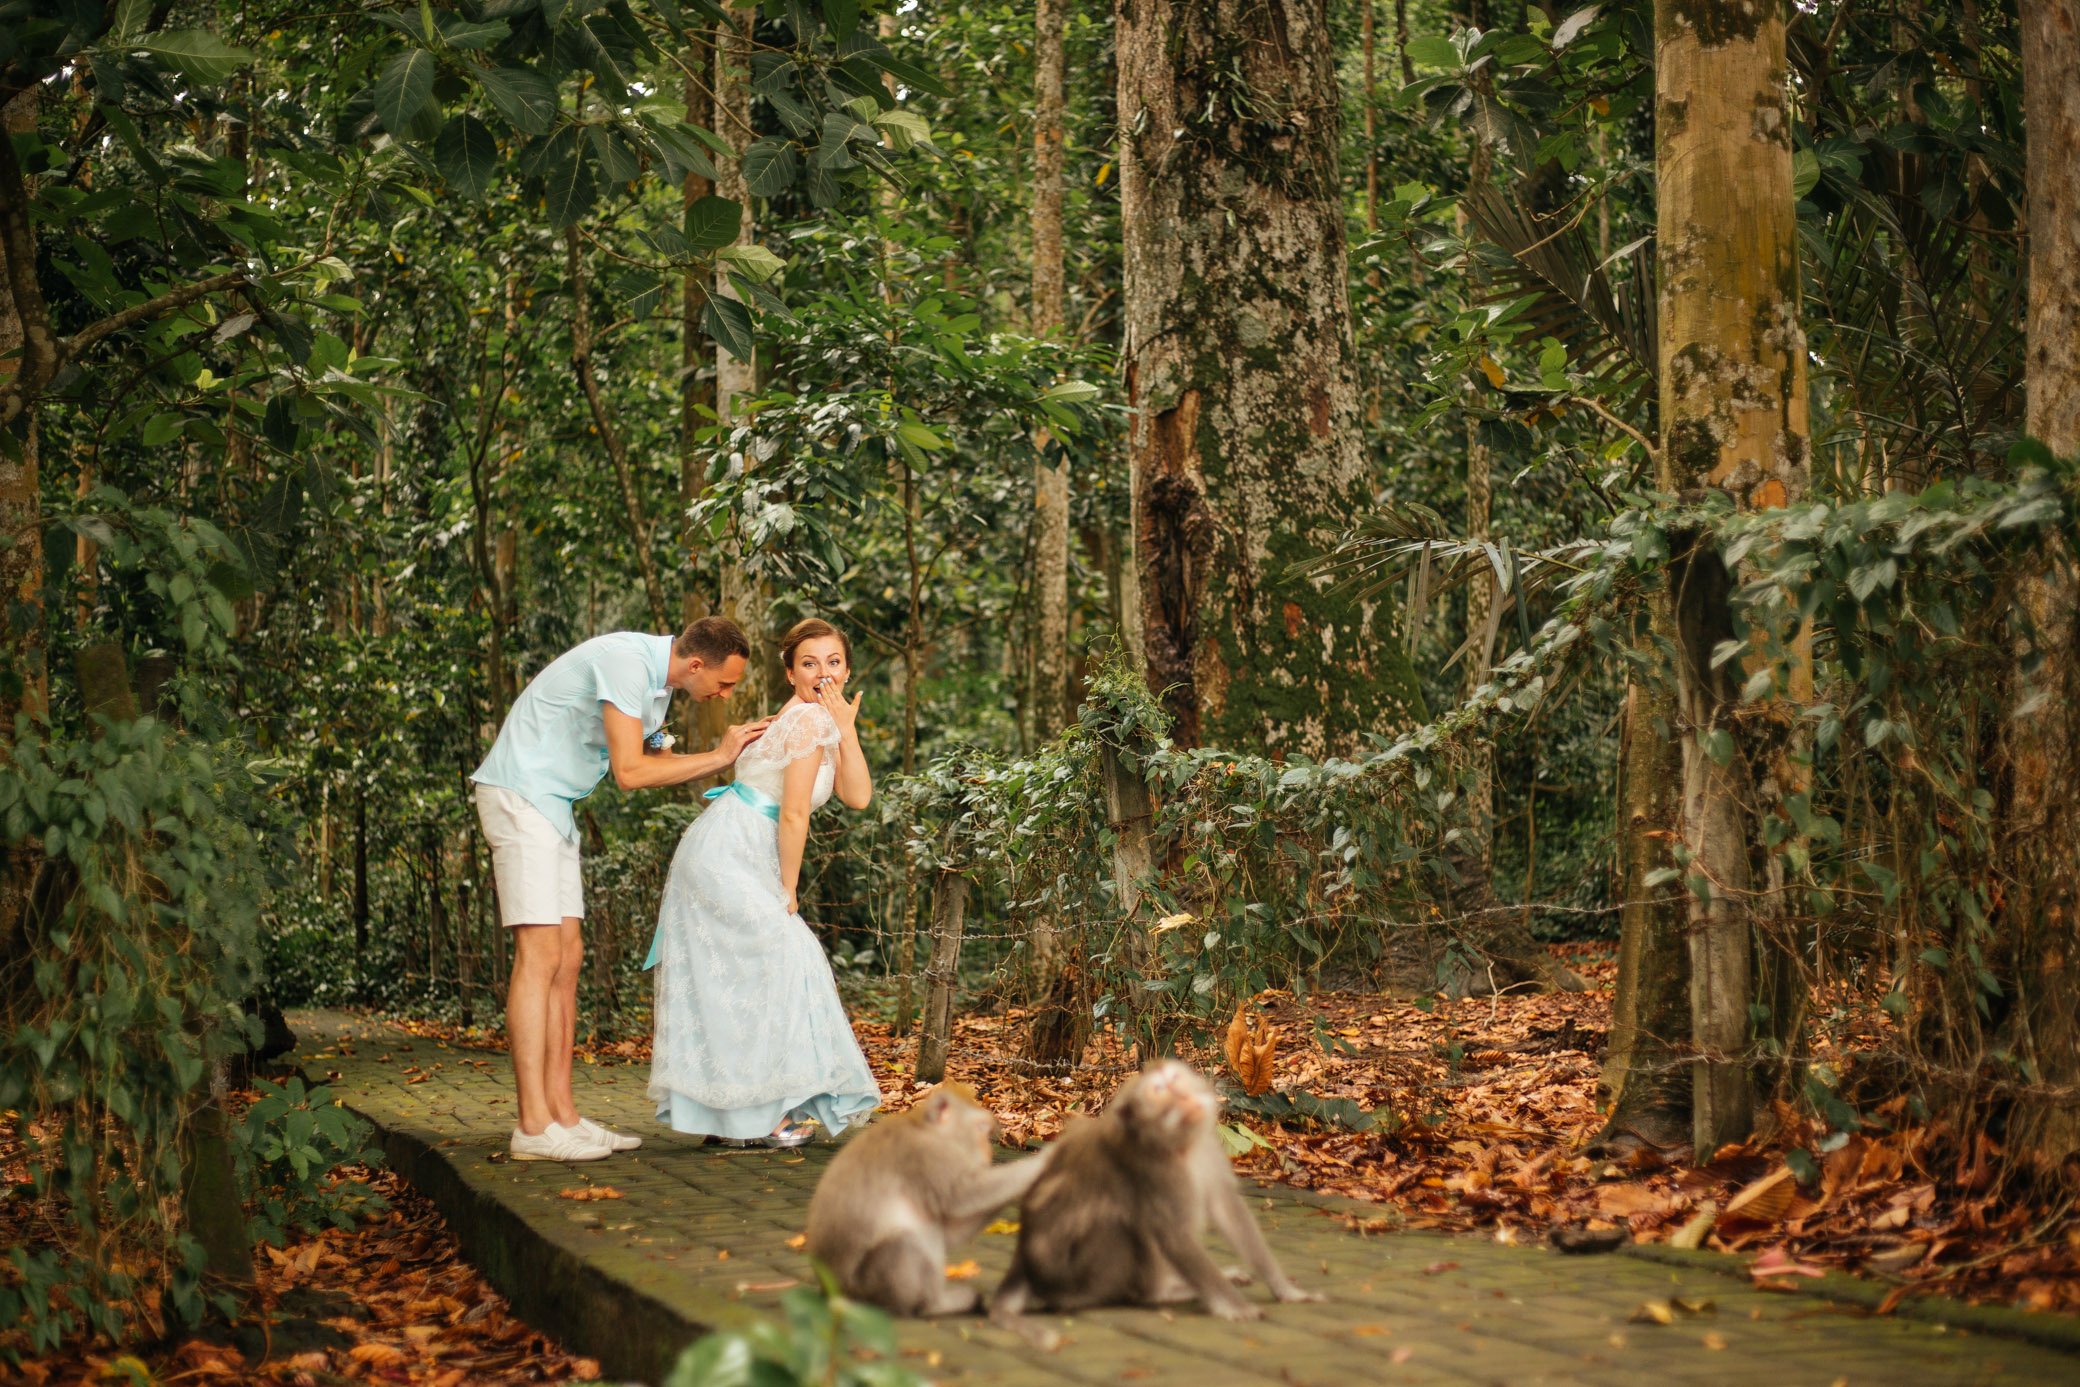 Лес обезьян в Убуде, достопримечательность Бали. Джунгли, обезьяны ищут вшей у друг друга. Невеста в свадебном платье 